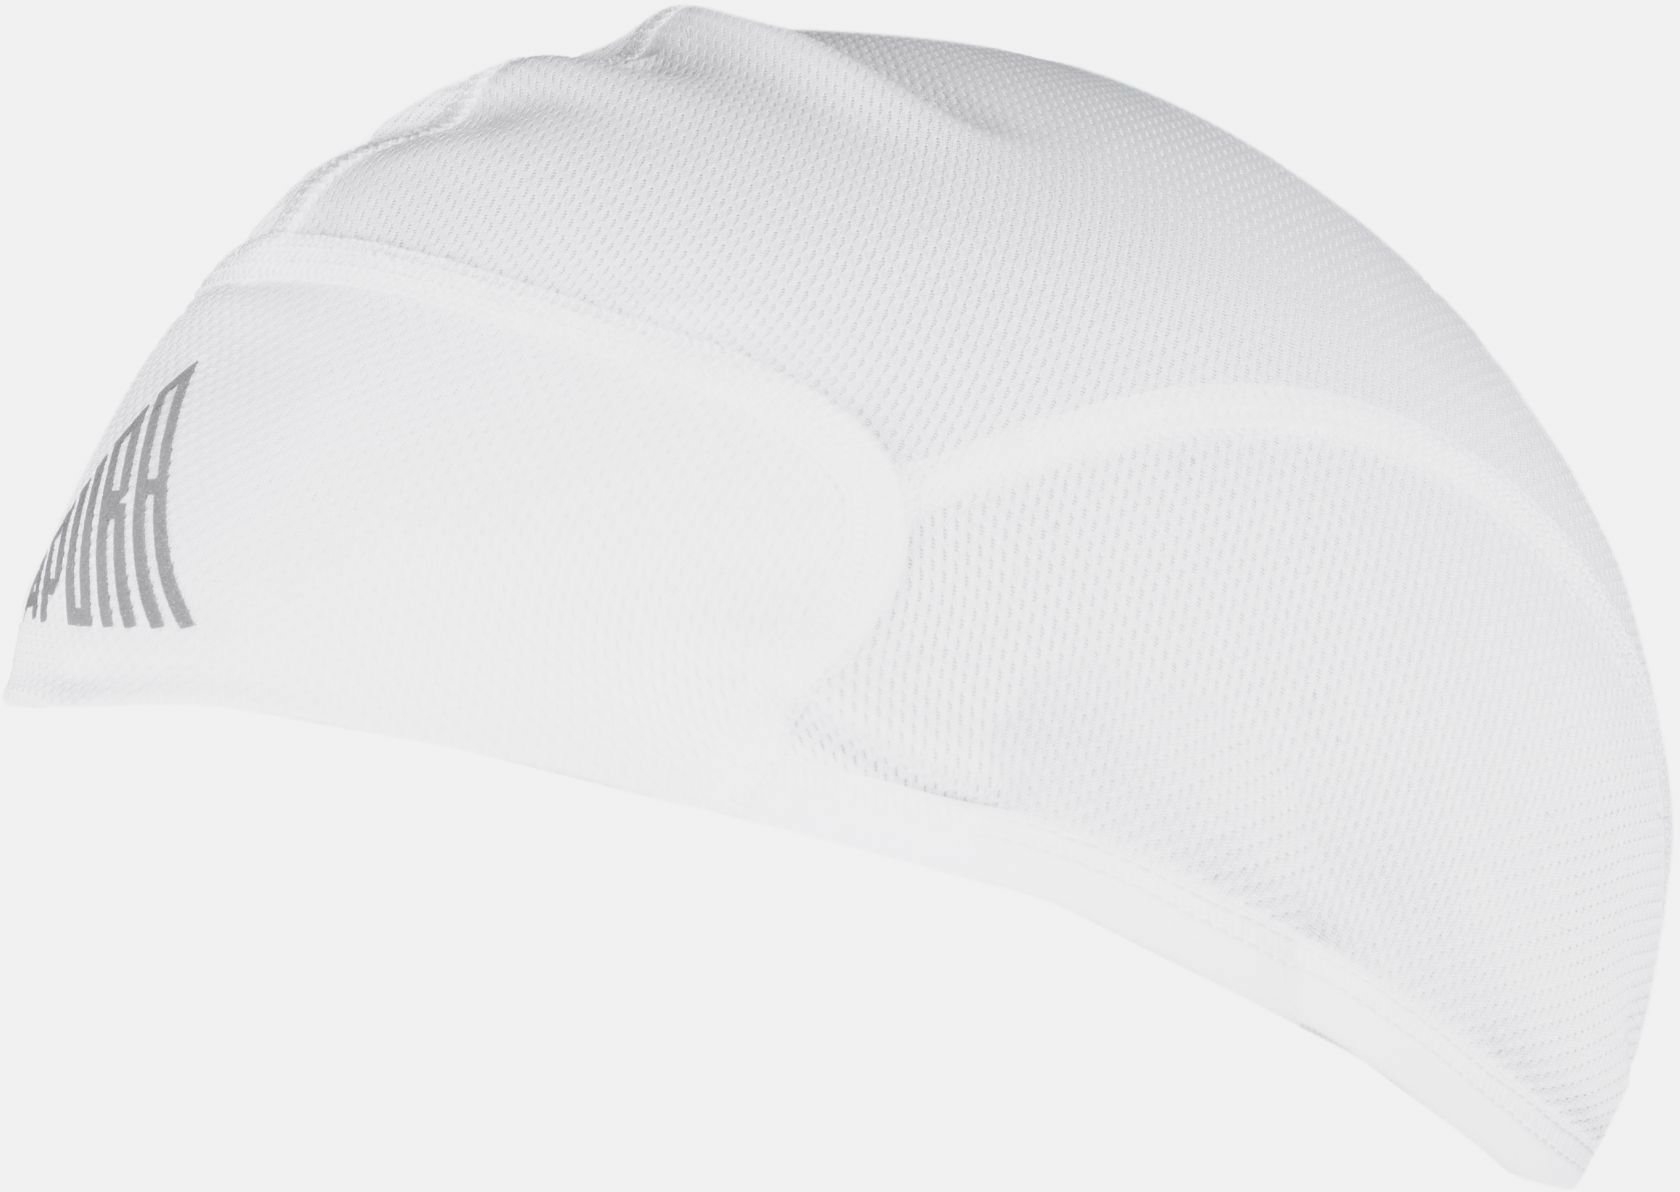 Apura Helmmütze UV Shield S/M white